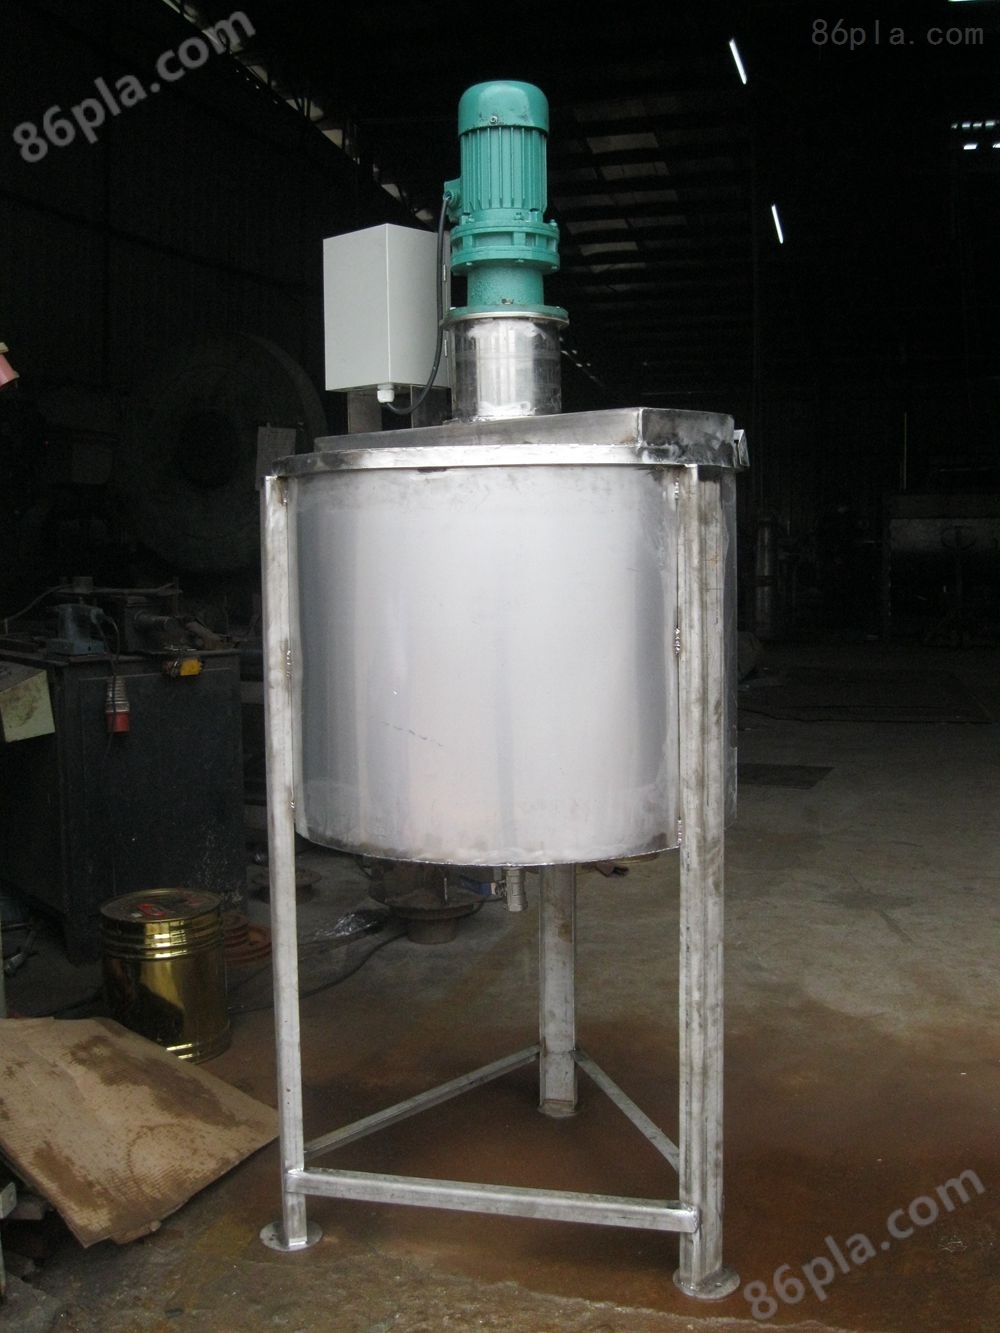 大小可订制液体搅拌机质量的把控合理的价格尽在广州逸通塑机